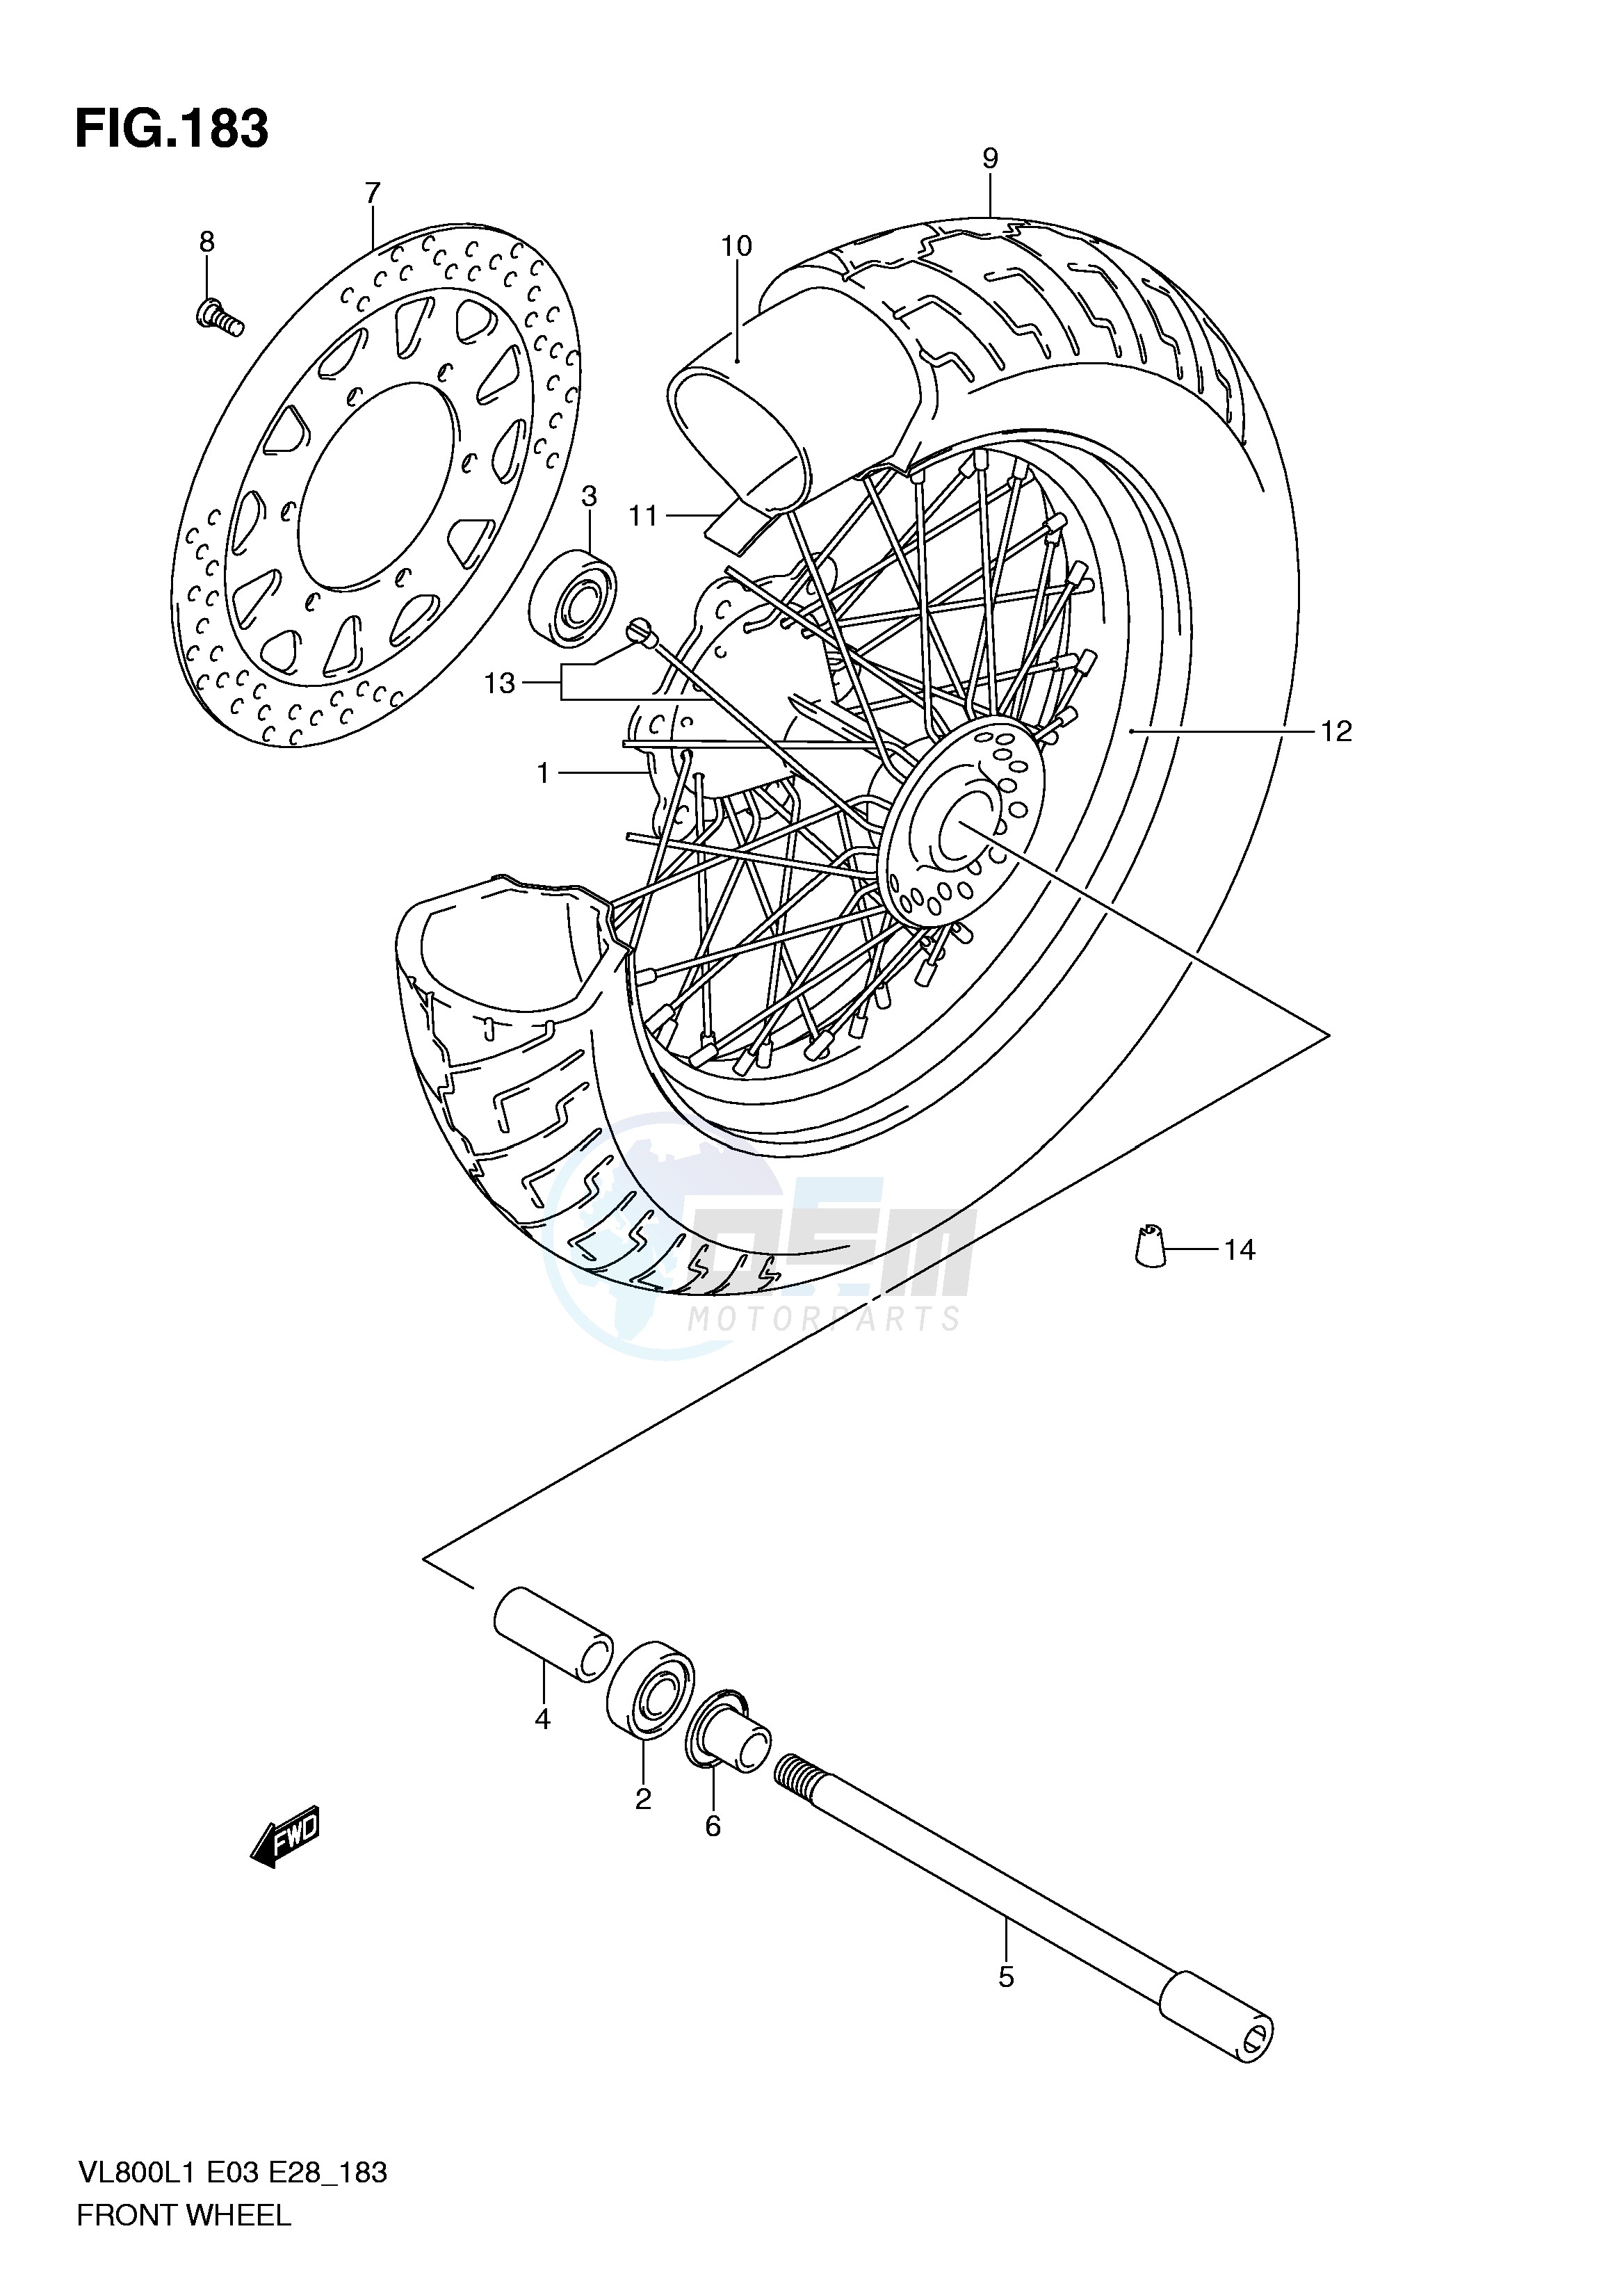 FRONT WHEEL (VL800L1 E3) blueprint